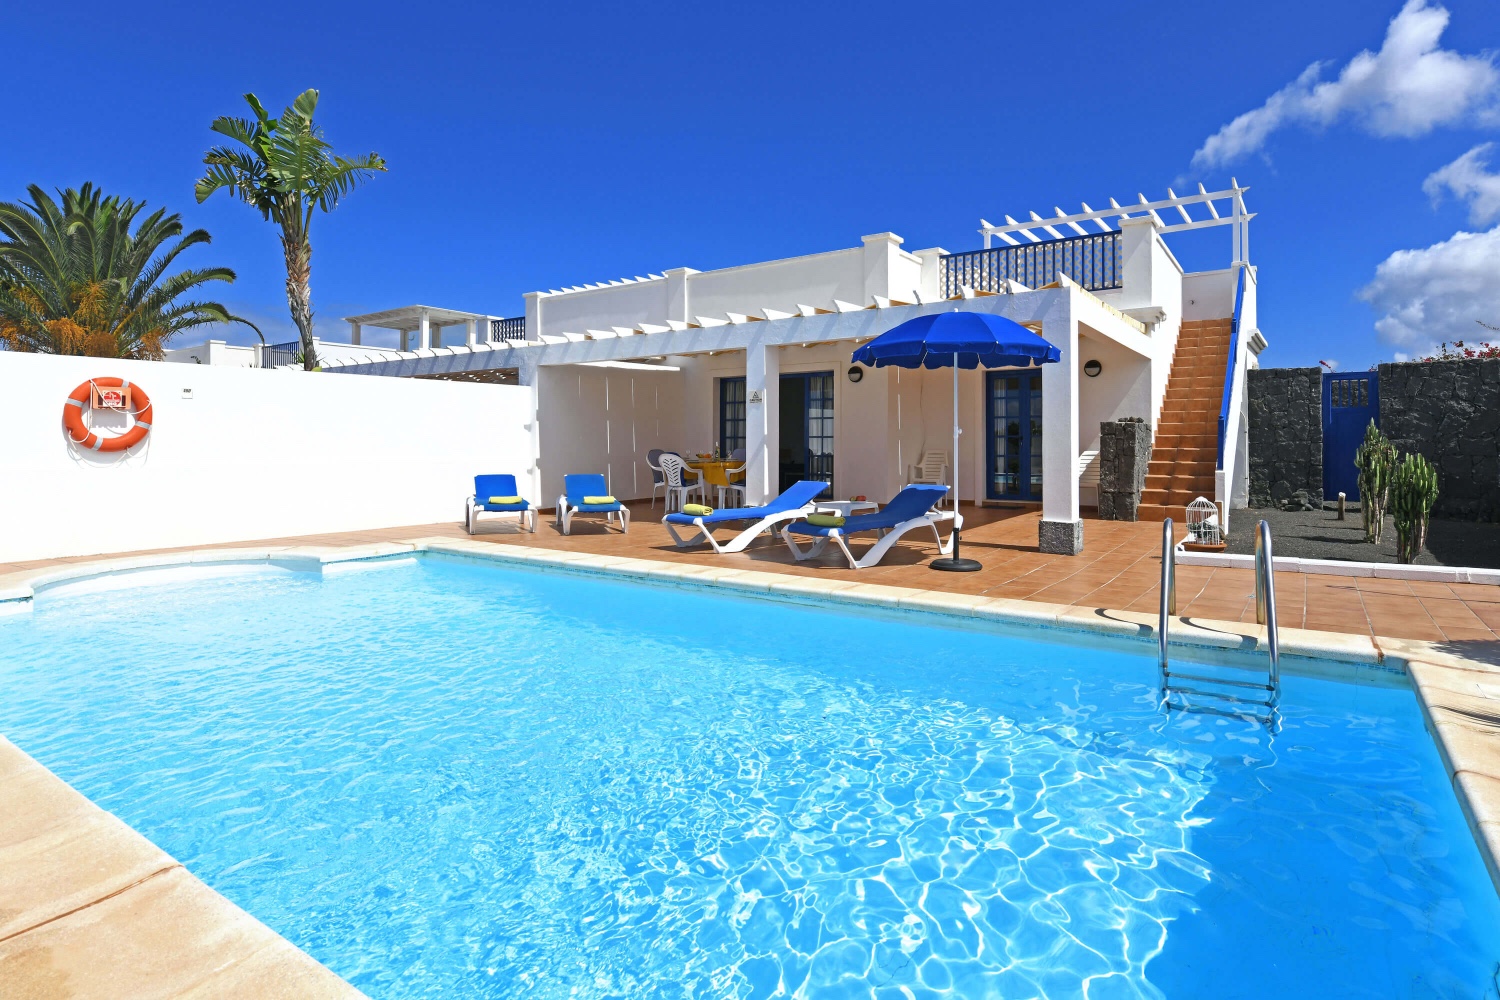 Dom w stylu morskim oraz z prywatnym basenem w dzielnicy mieszkalnej w pobliżu Playa Blanca